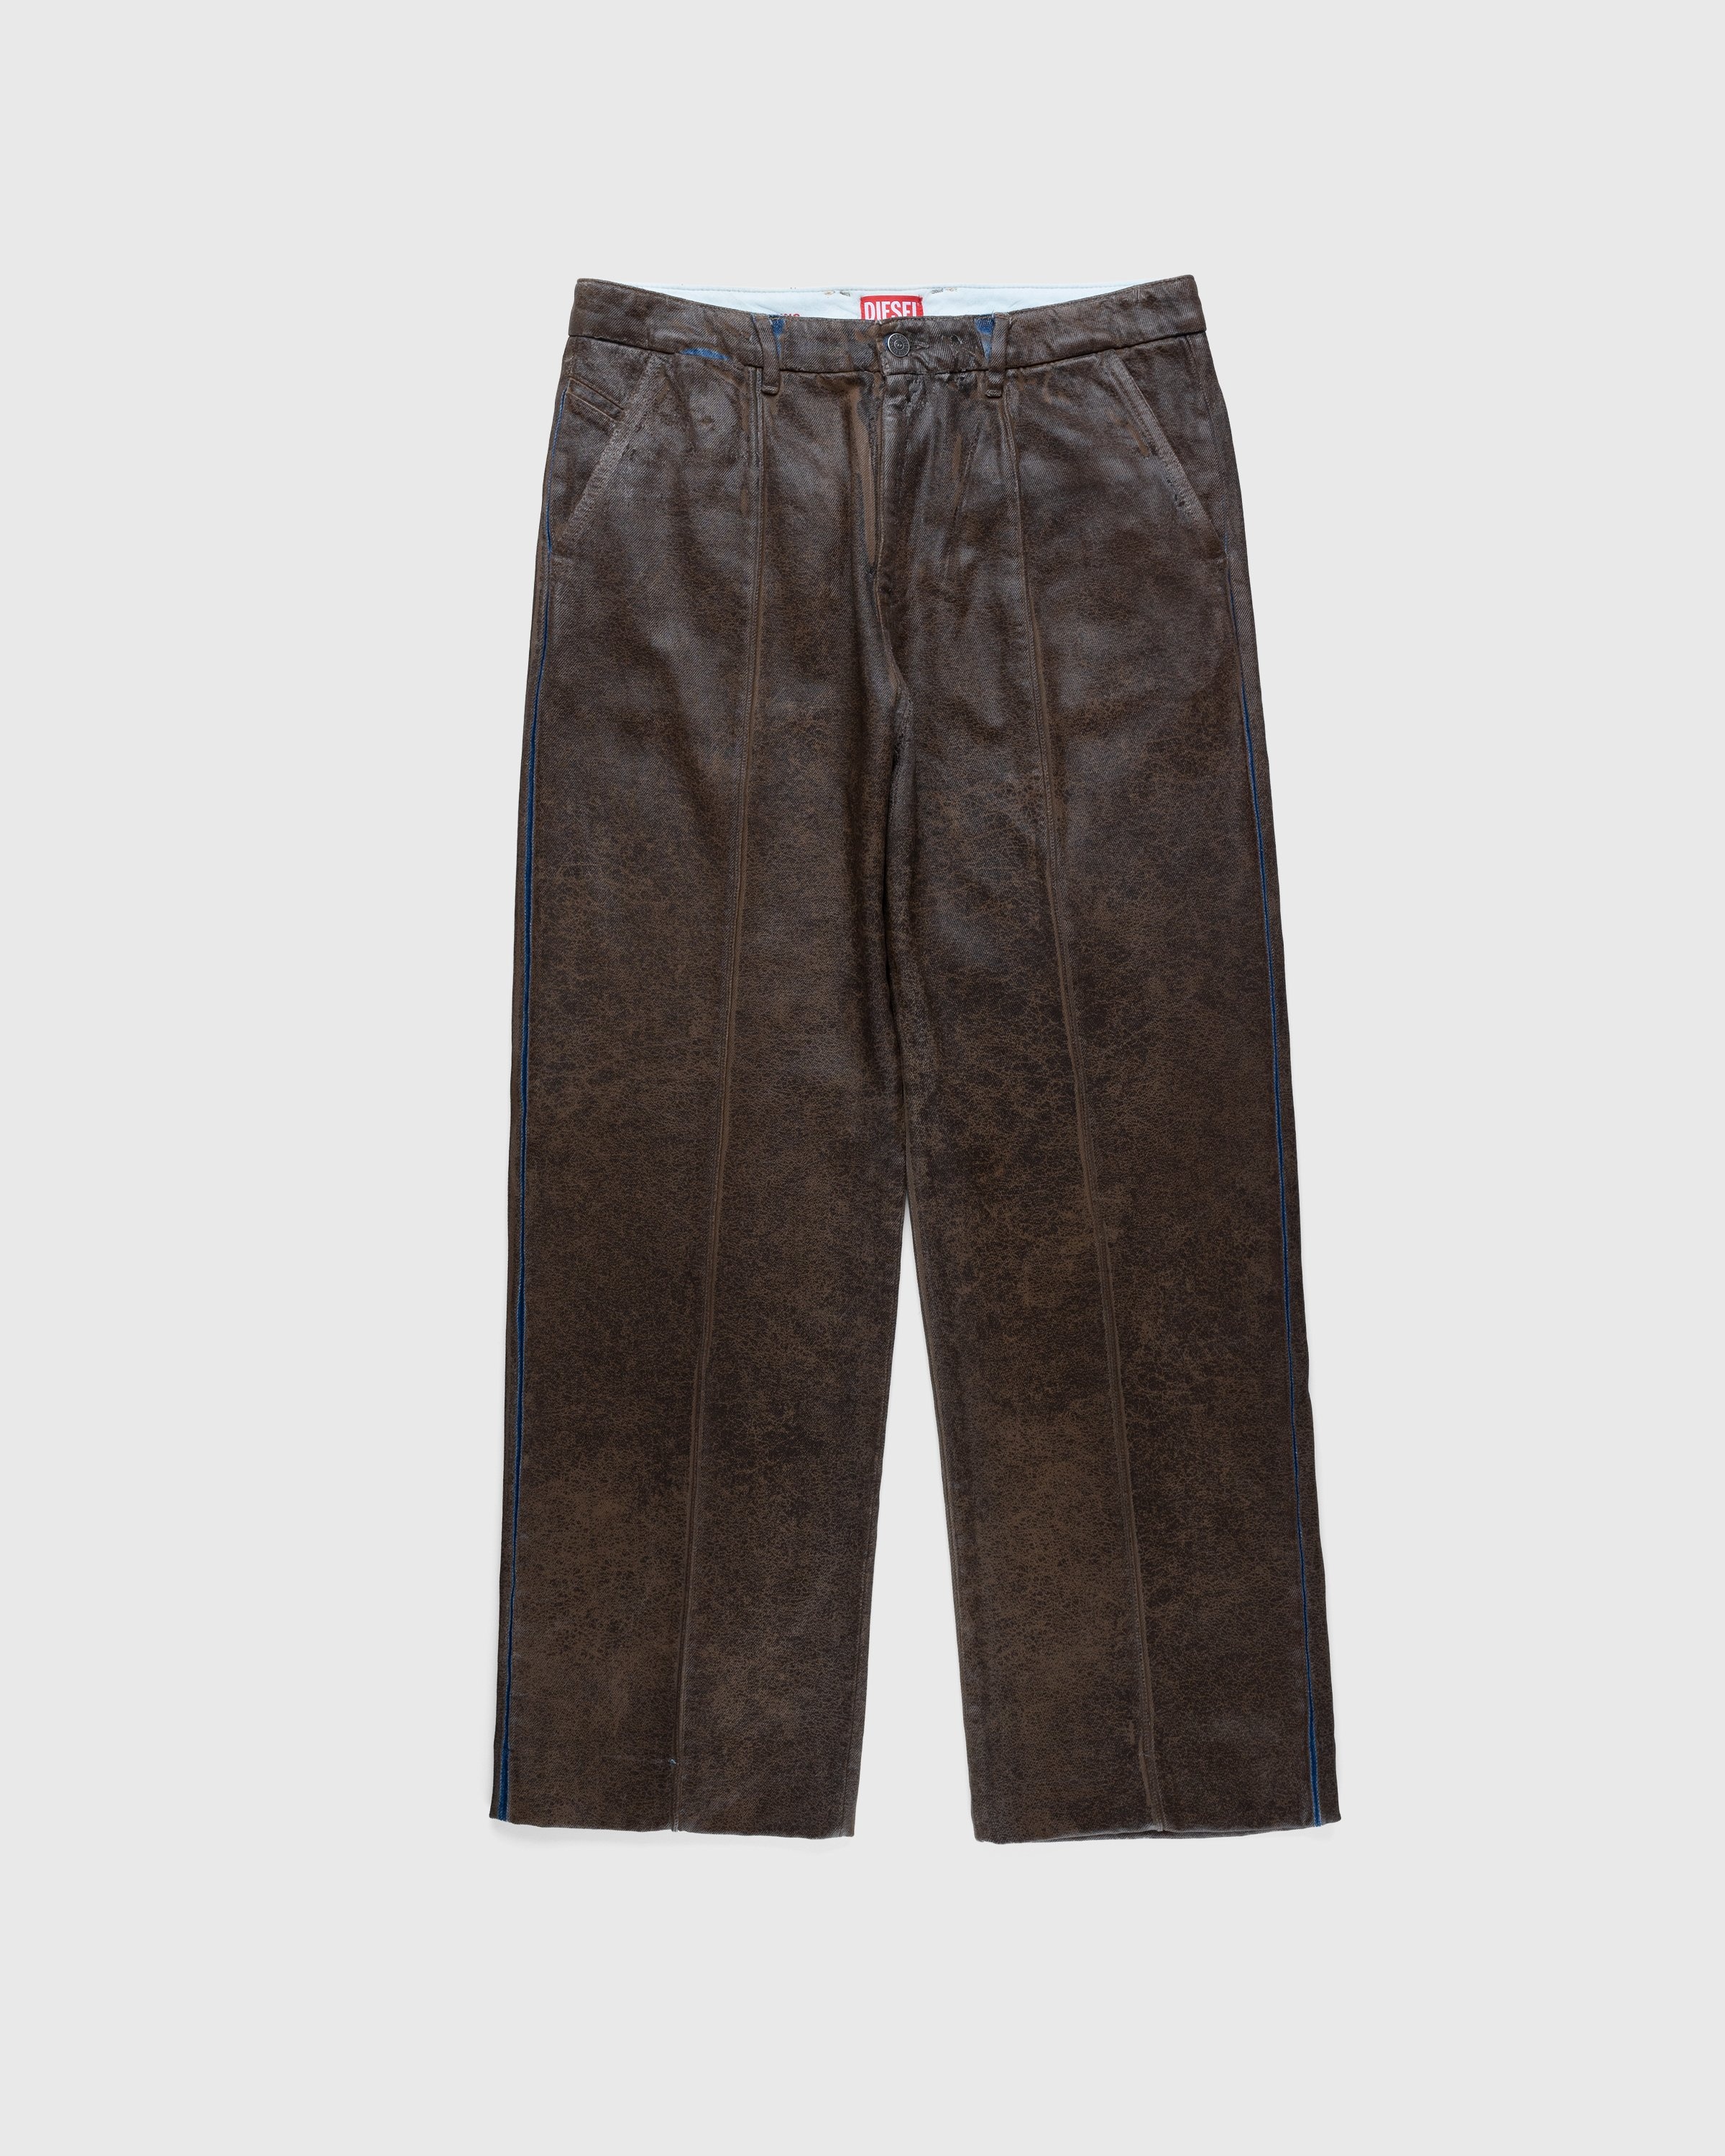 Diesel – Chino Work Jeans Aztec - Pants - Beige - Image 1